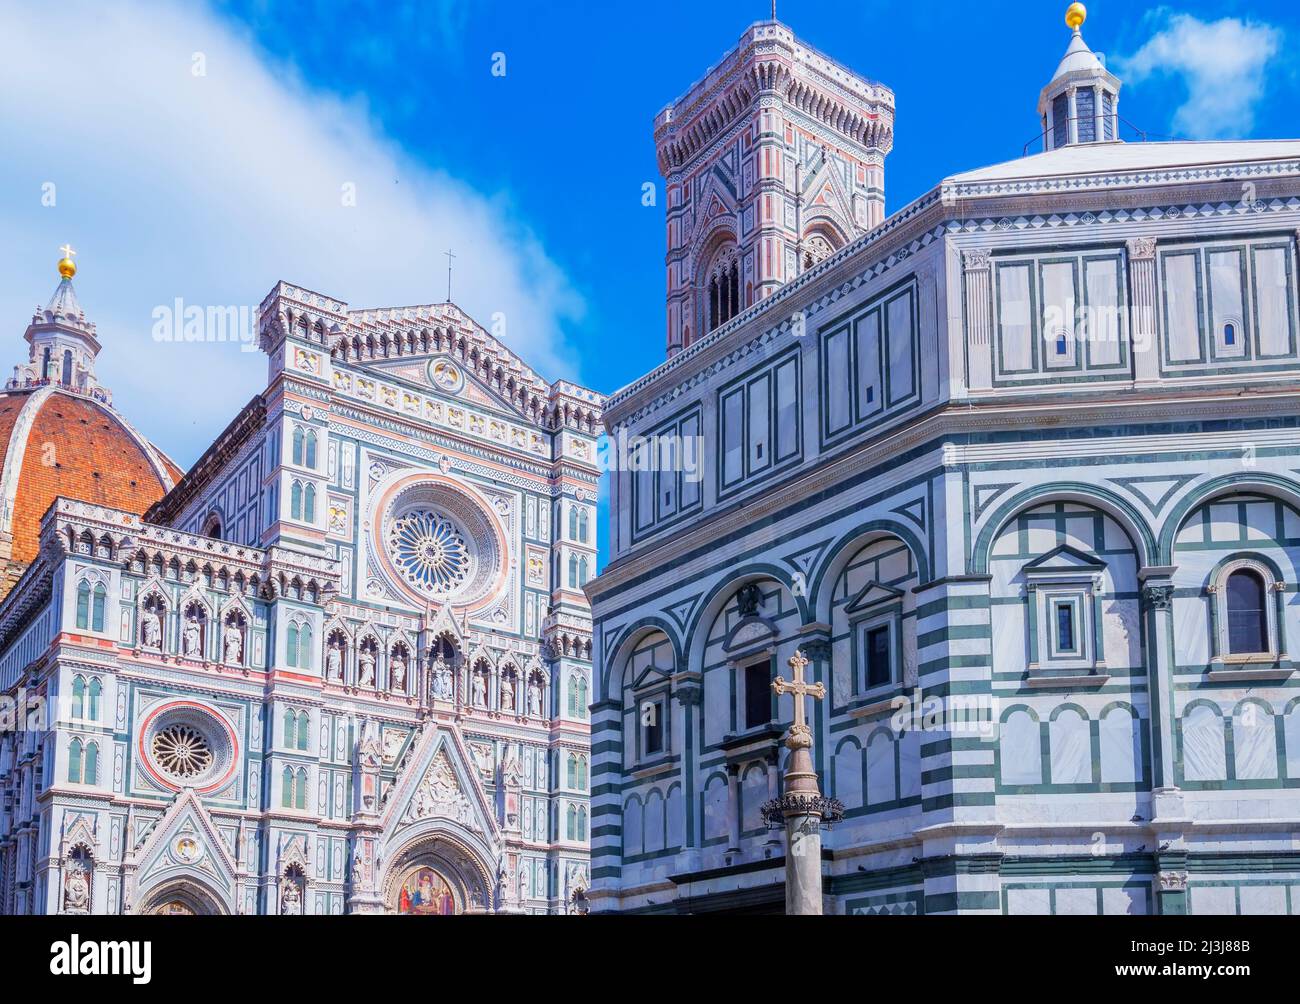 Duomo Santa Maria del Fiore, Florence, Tuscany, Italy, Europe Stock Photo